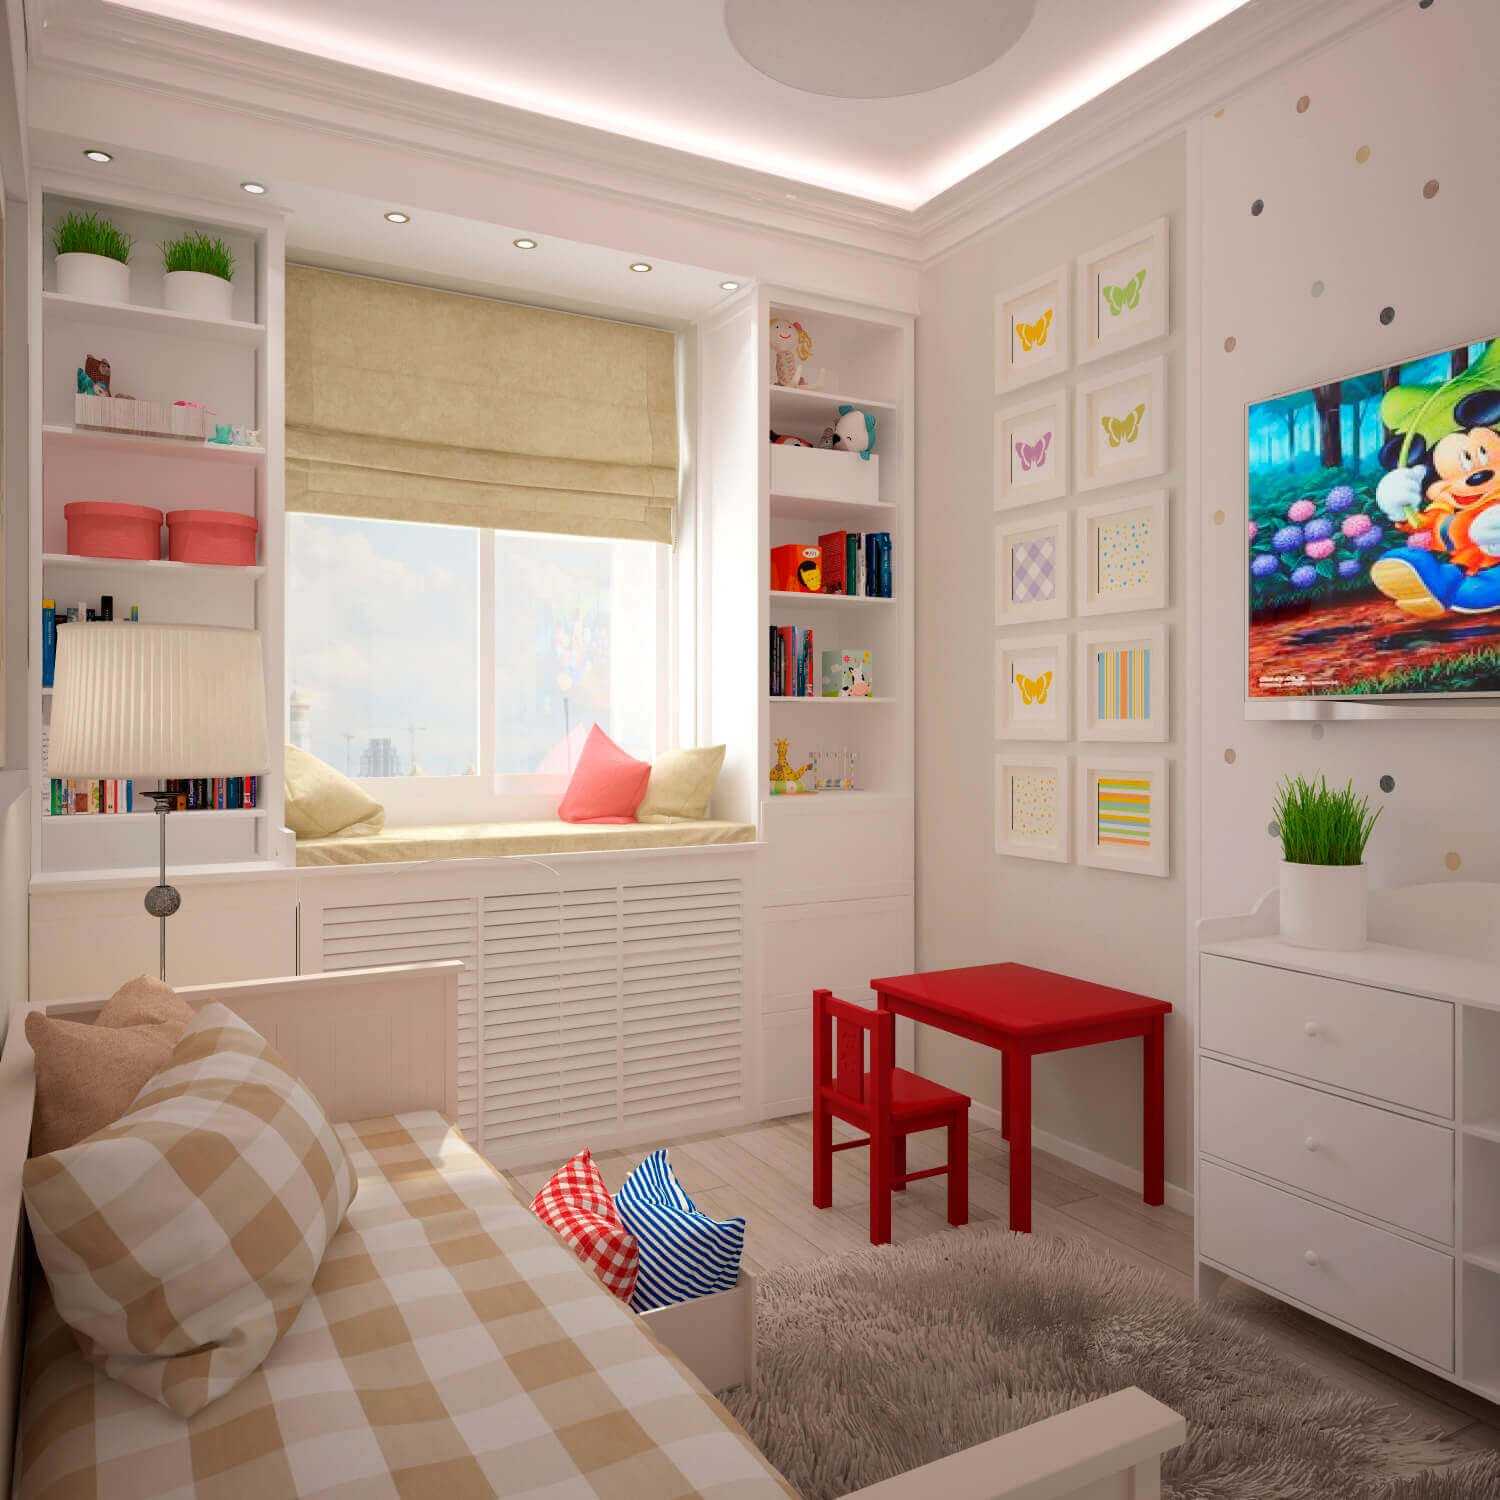 Дизайн детской комнаты 12 кв м  фото интересных идей дизайна Цветовая гамма и стиль в помещении классический, современный и другие Методы отделки потолка, пола и стен